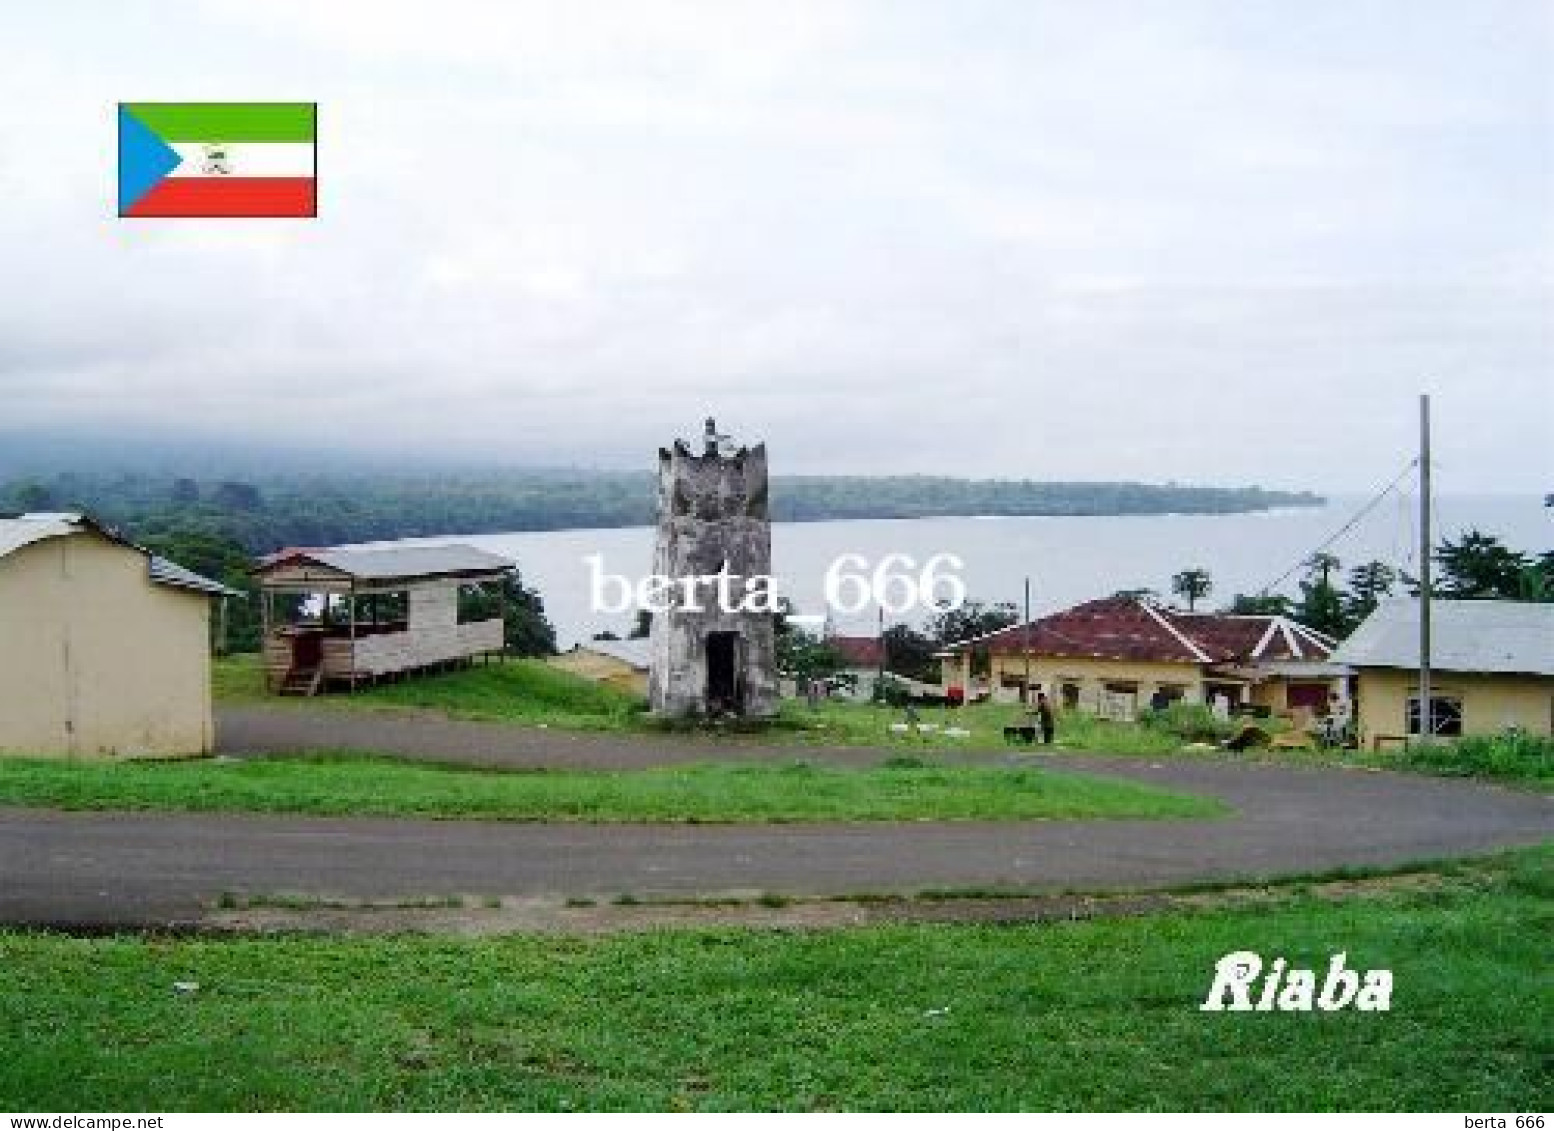 Equatorial Guinea Riaba Lighthouse New Postcard - Equatoriaal Guinea